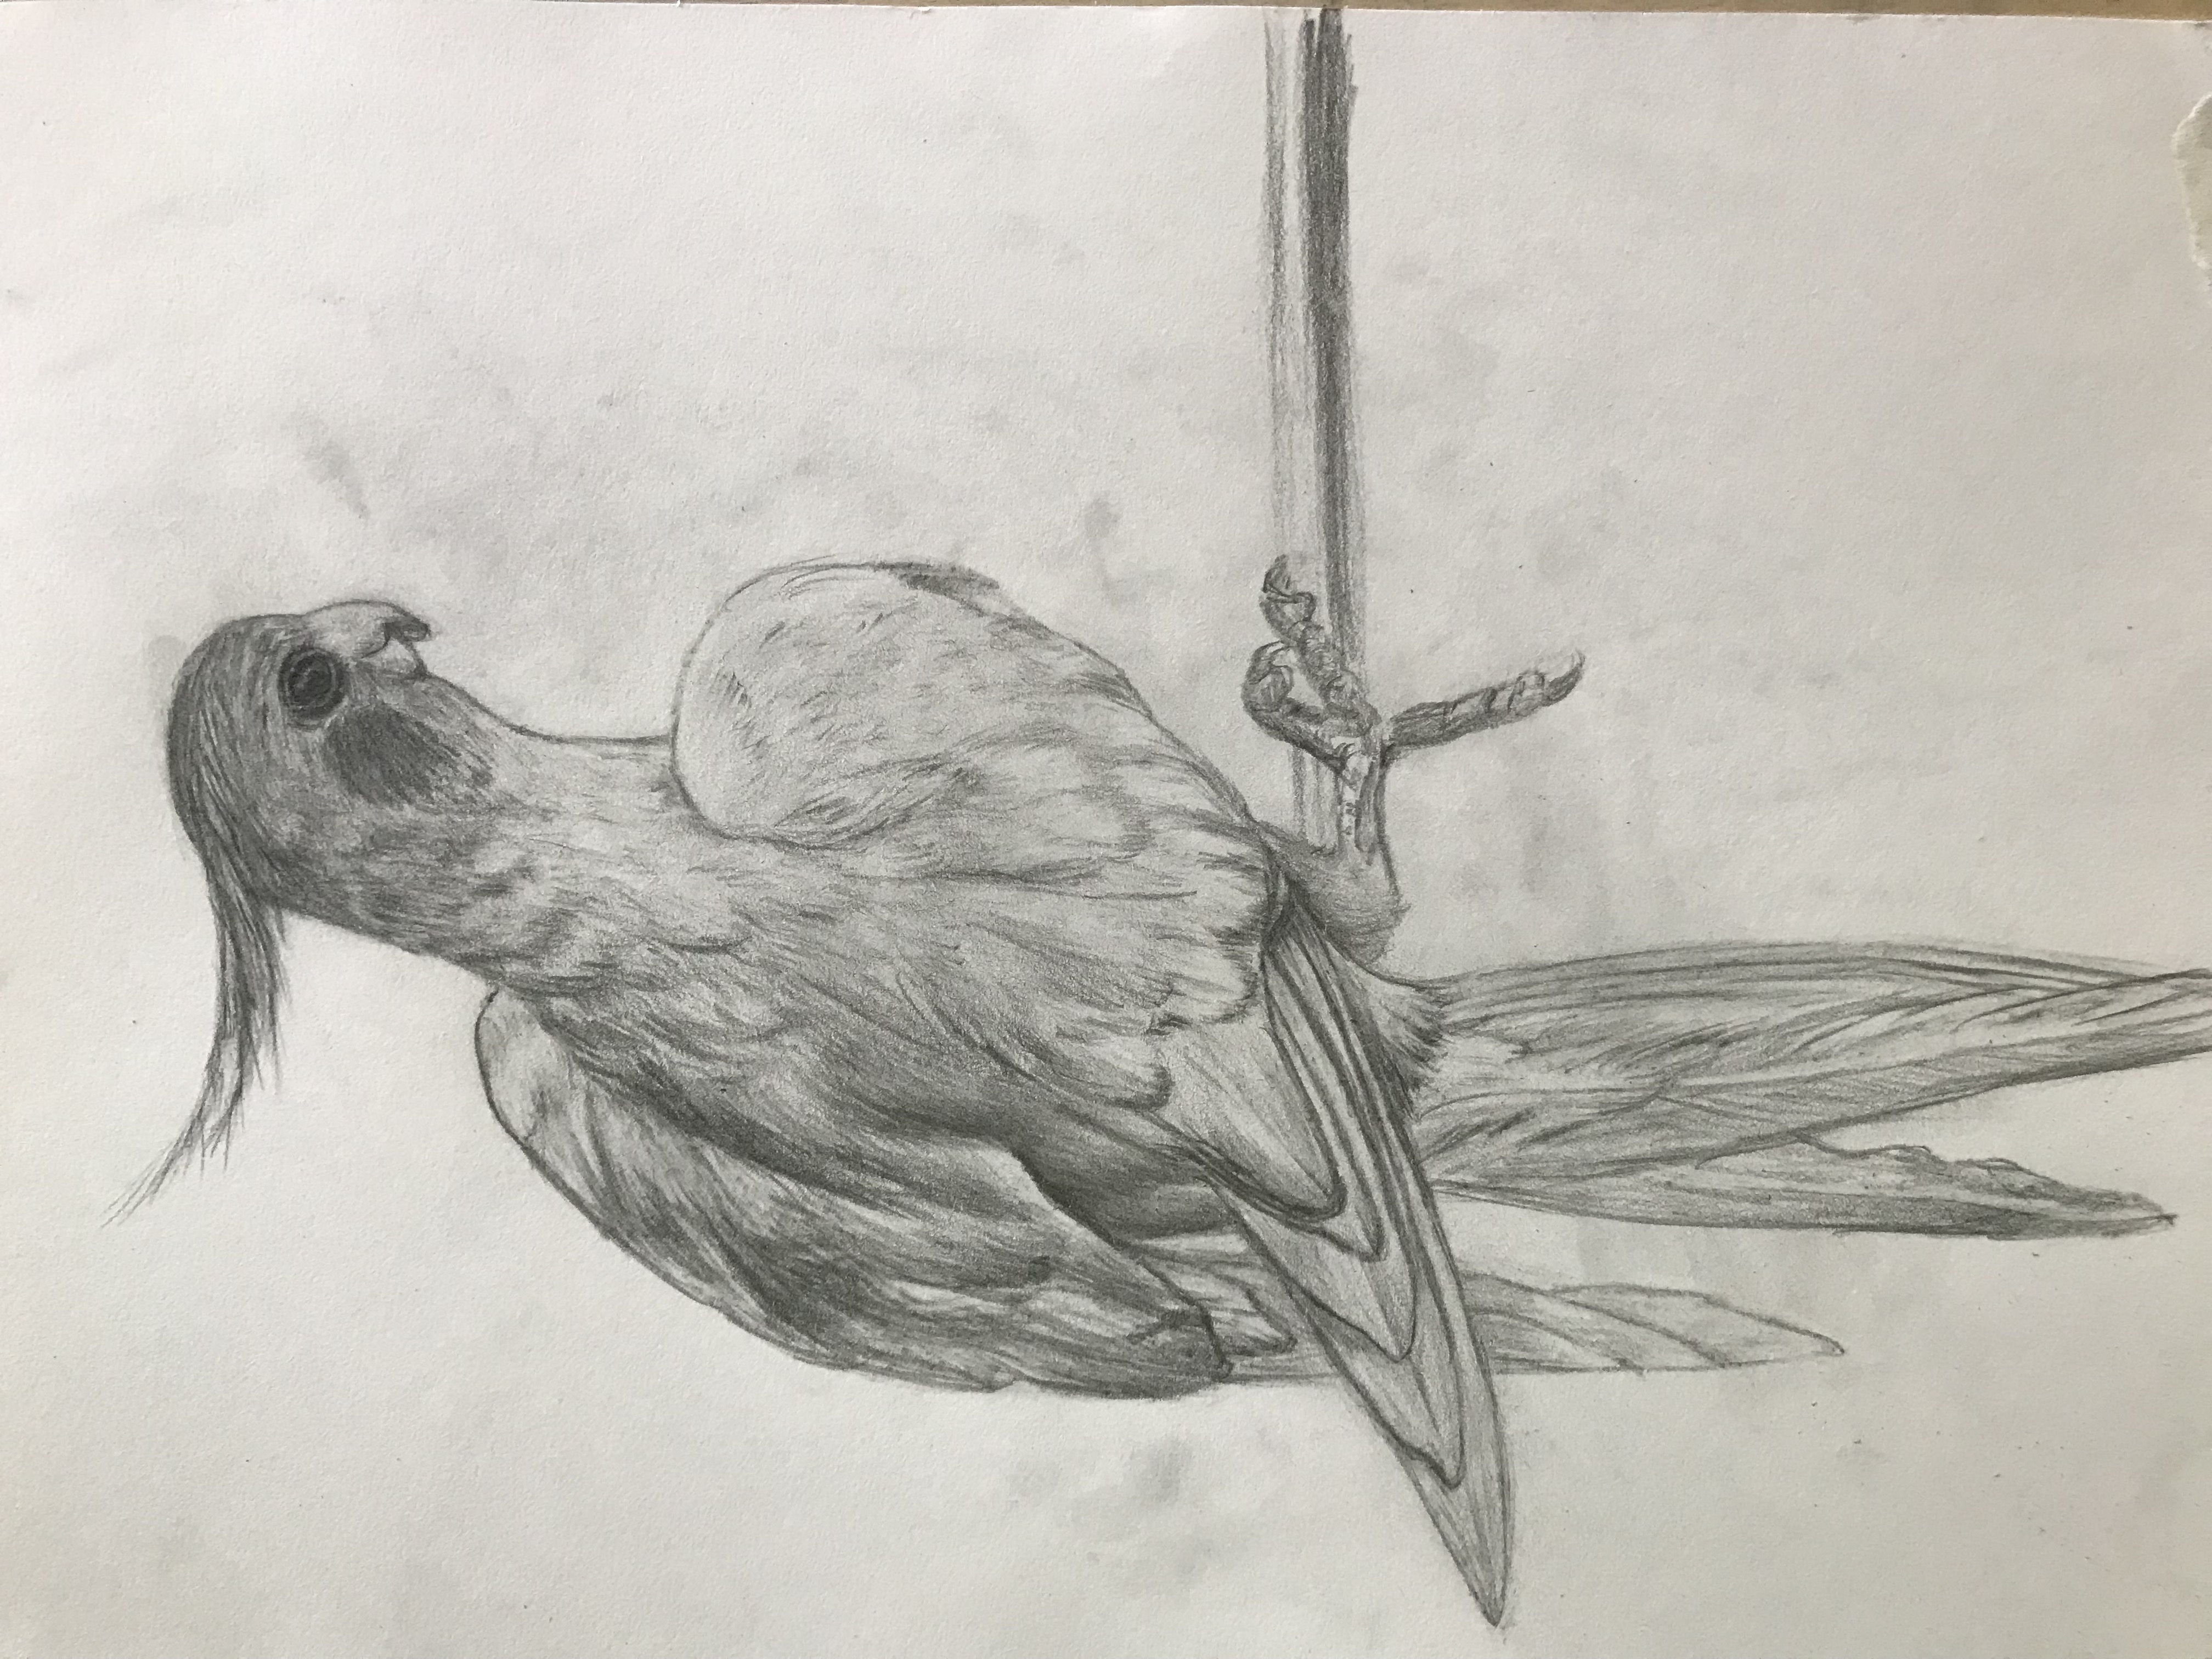 玄凤鹦鹉画 铅笔画图片